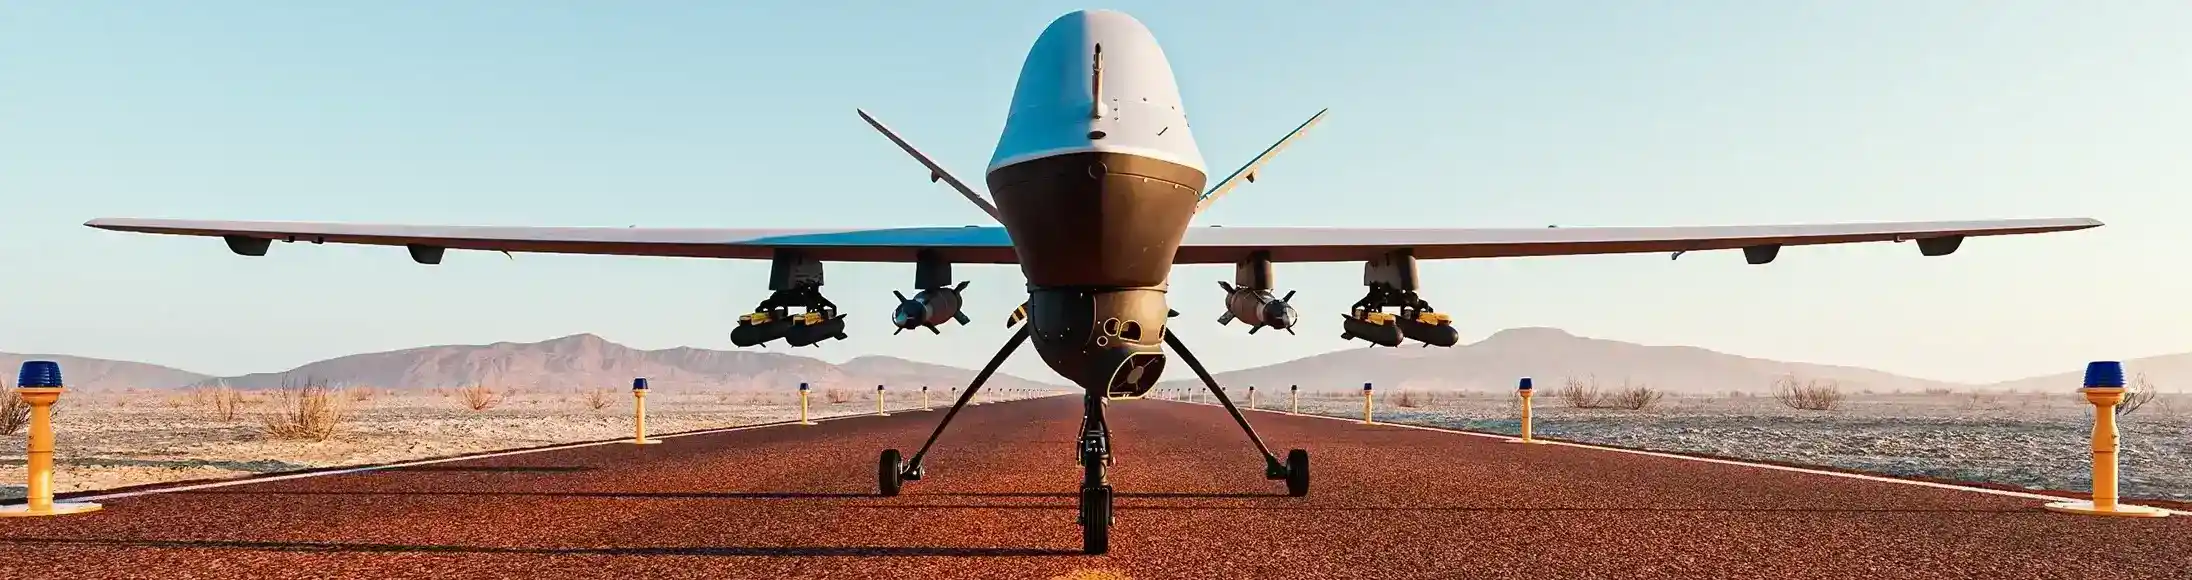 drone desert illustration 3d